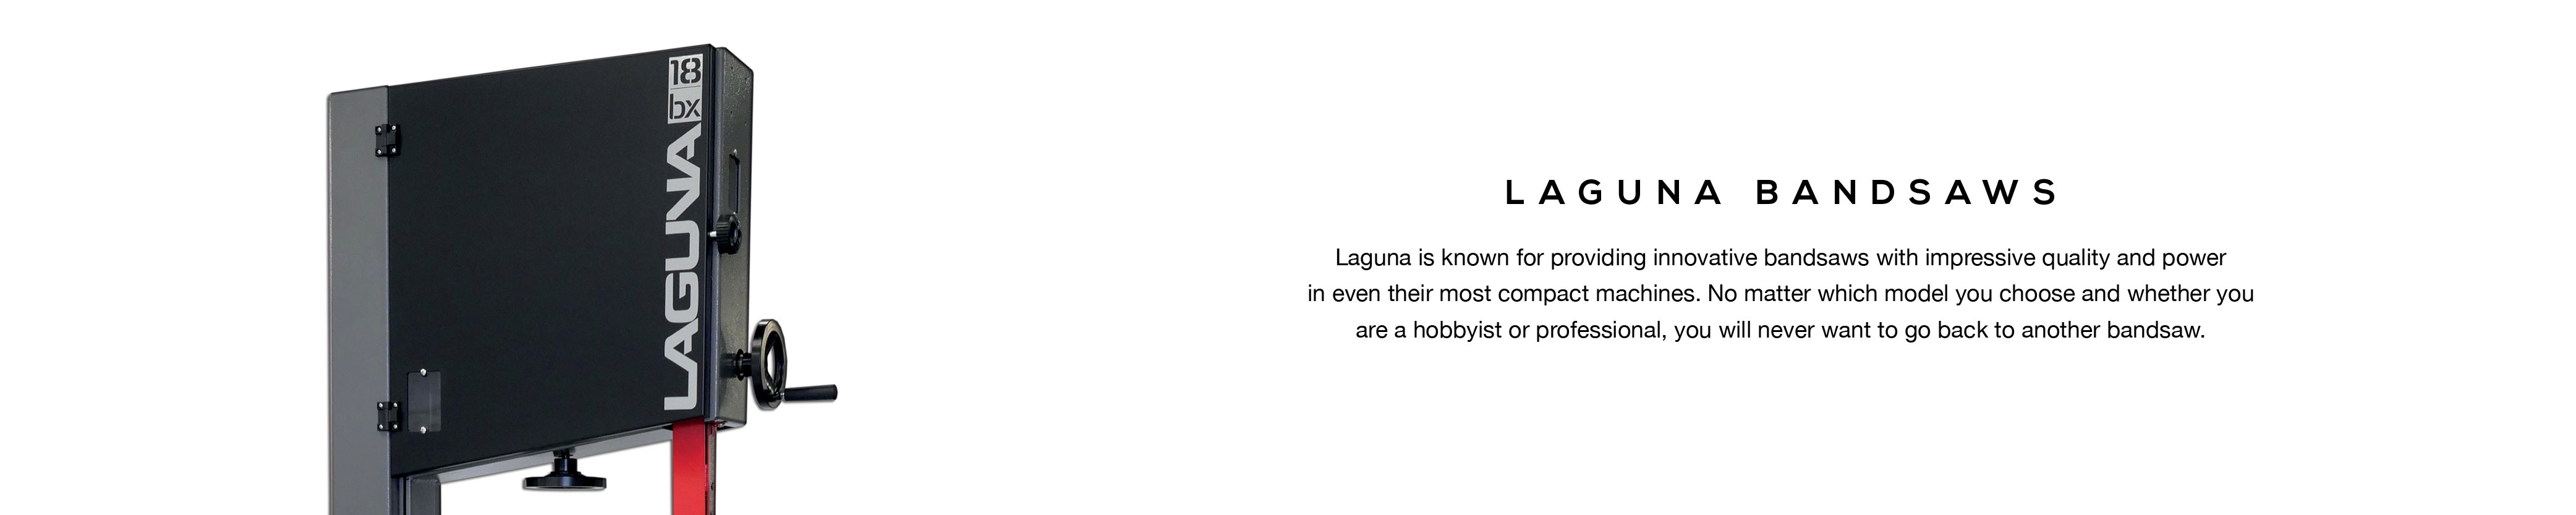 Laguna Landing Page - Bandsaws